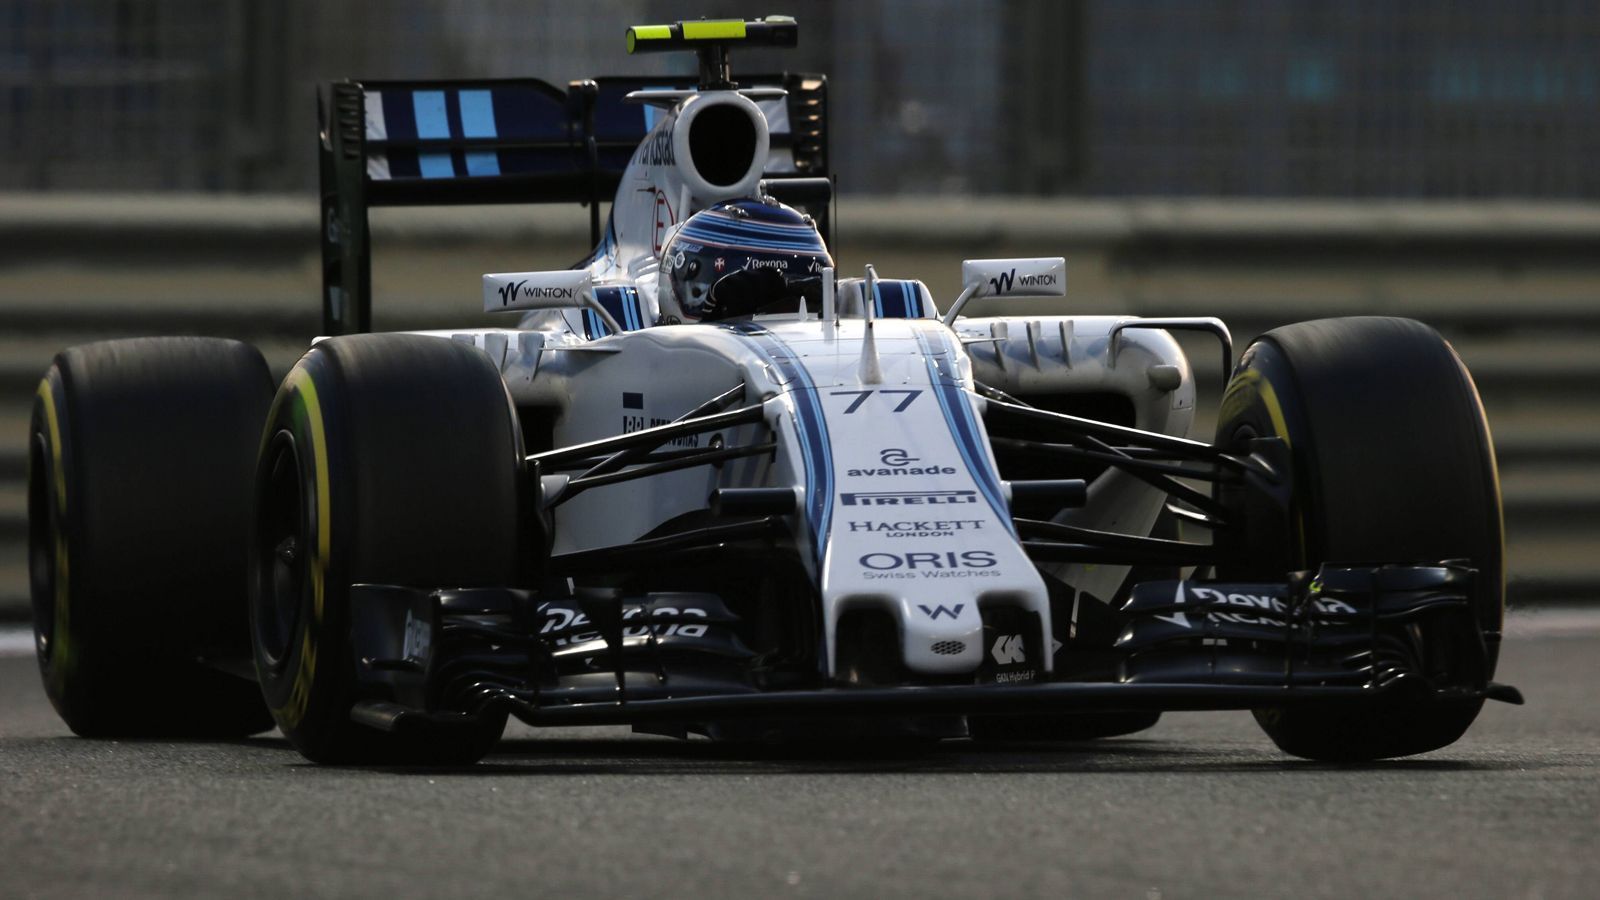 
                <strong>Letztes Aufbäumen</strong><br>
                Was folgte, war nochmal ein Aufbäumen: 2014 und 2015 belegte Williams Platz 3 in der Konstrukteurswertung, der heutige Mercedes-Pilot Valtteri Bottas wurde WM-Vierter, Felipe Massa Sechster. Ein Jahr später fuhren beide auf den Plätzen fünf und sechs durchs Ziel. 
              